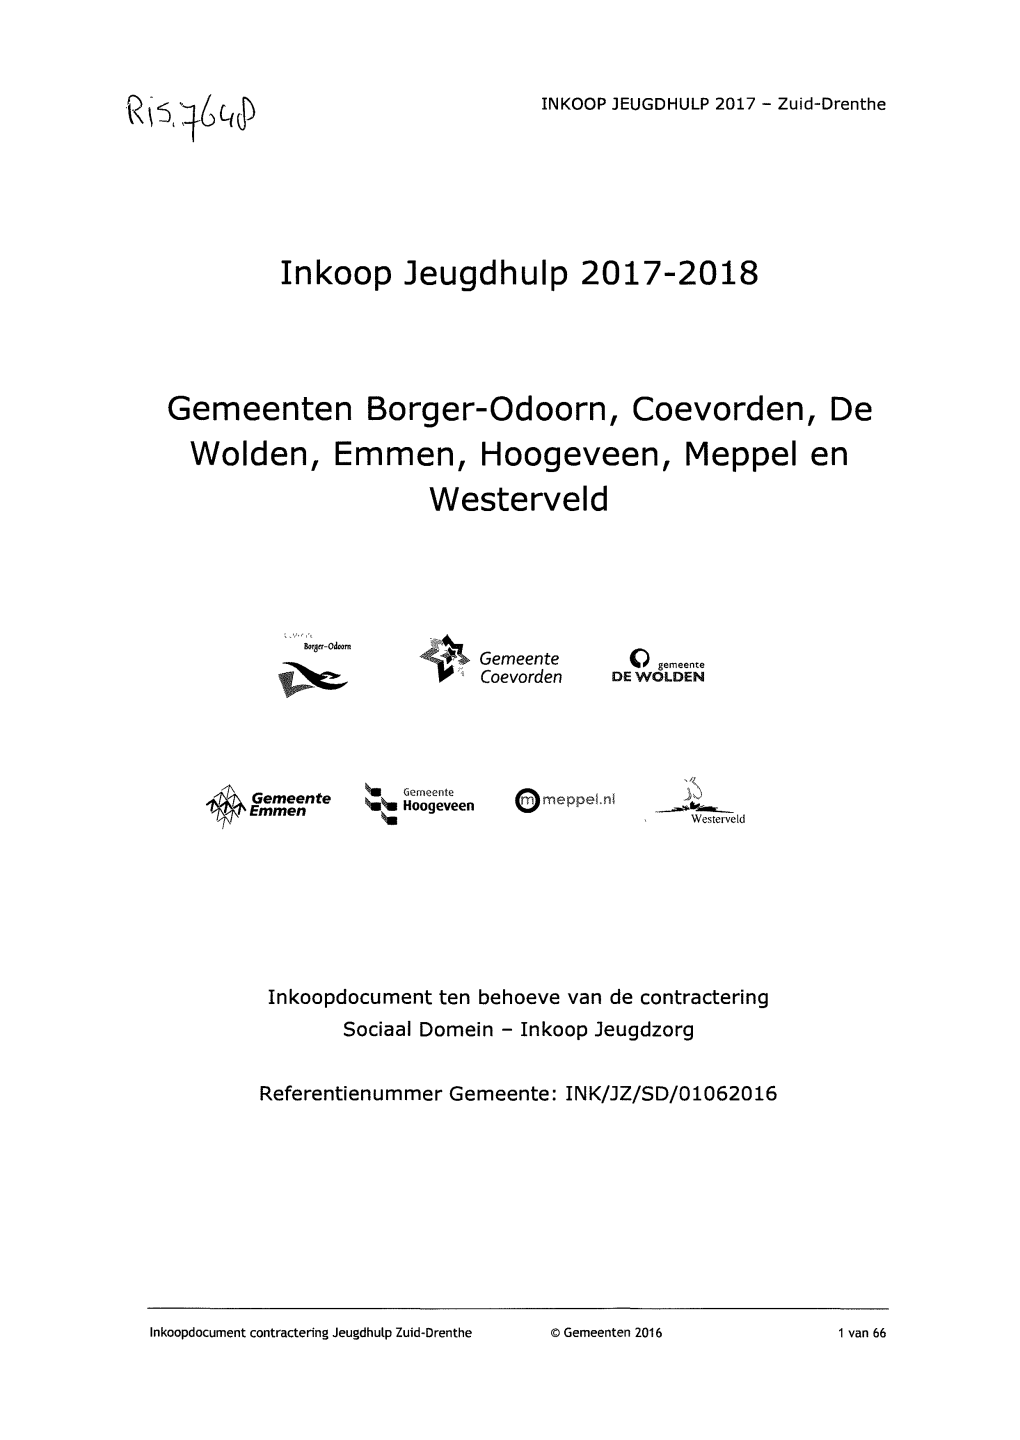 Inkoop Jeugdhulp 2017-2018 Gemeenten Borger-Odoorn